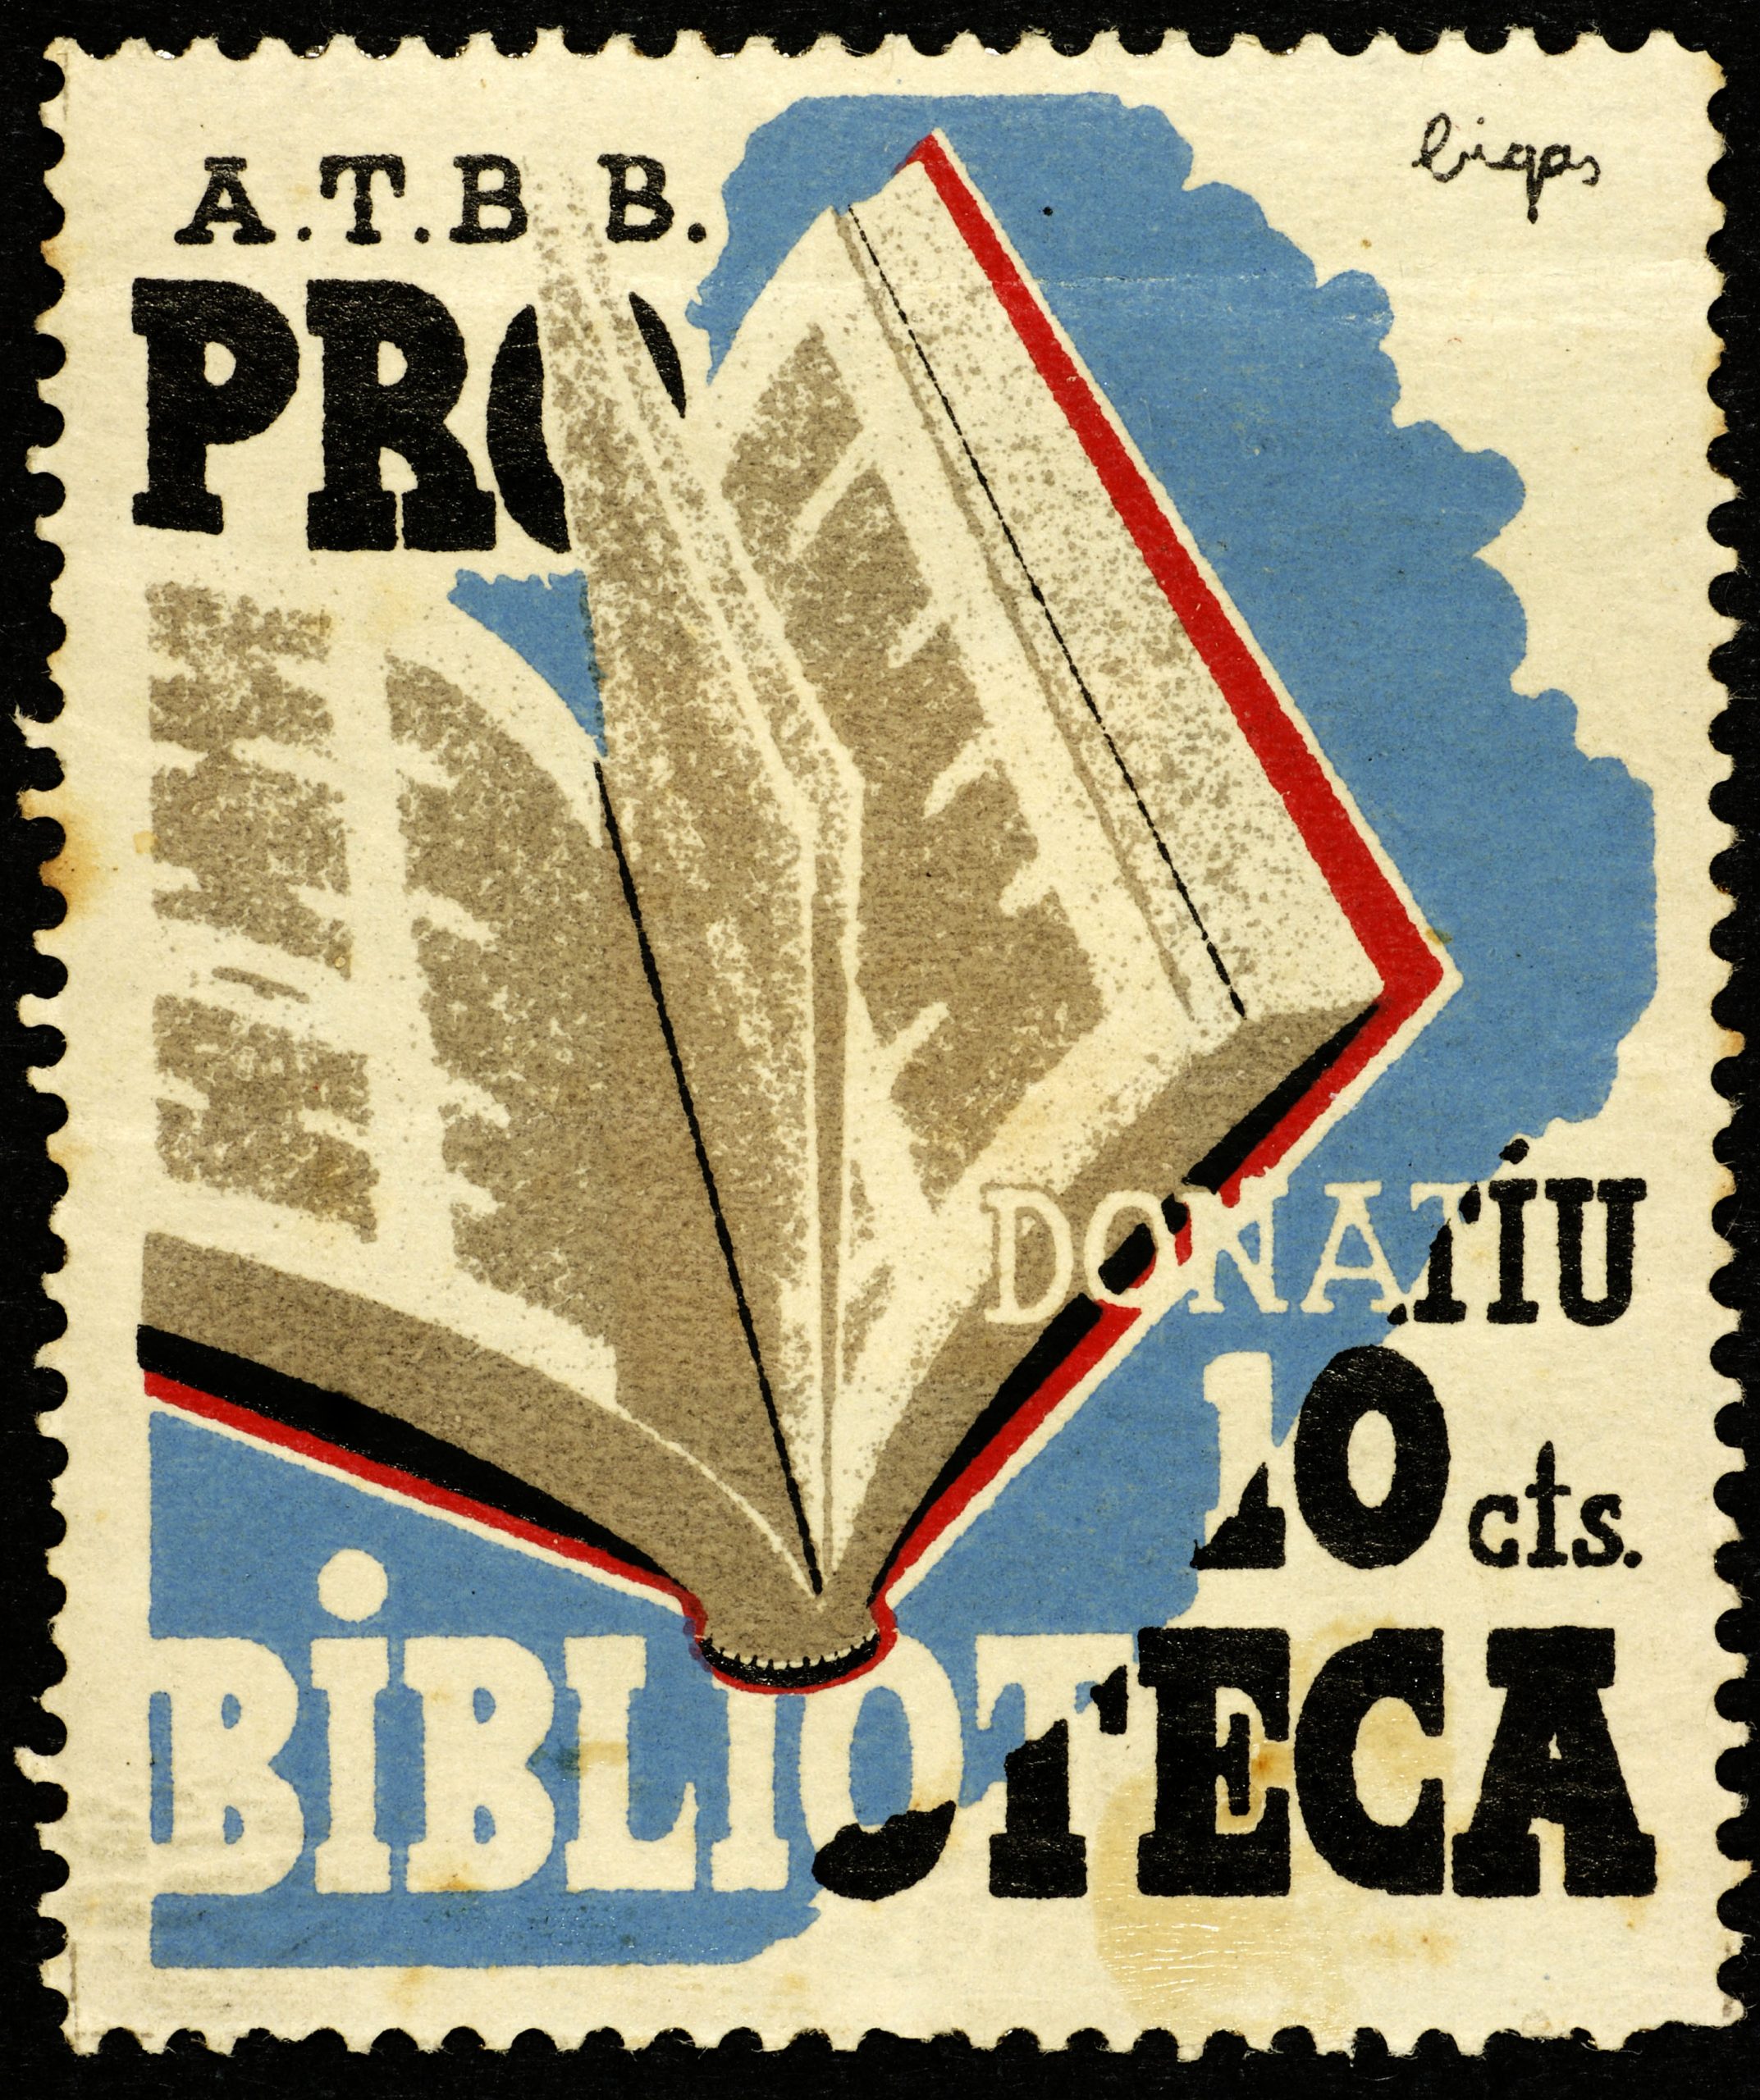 A.T.B.B. pro donatiu Biblioteca: 10 cèntims (Bigas)